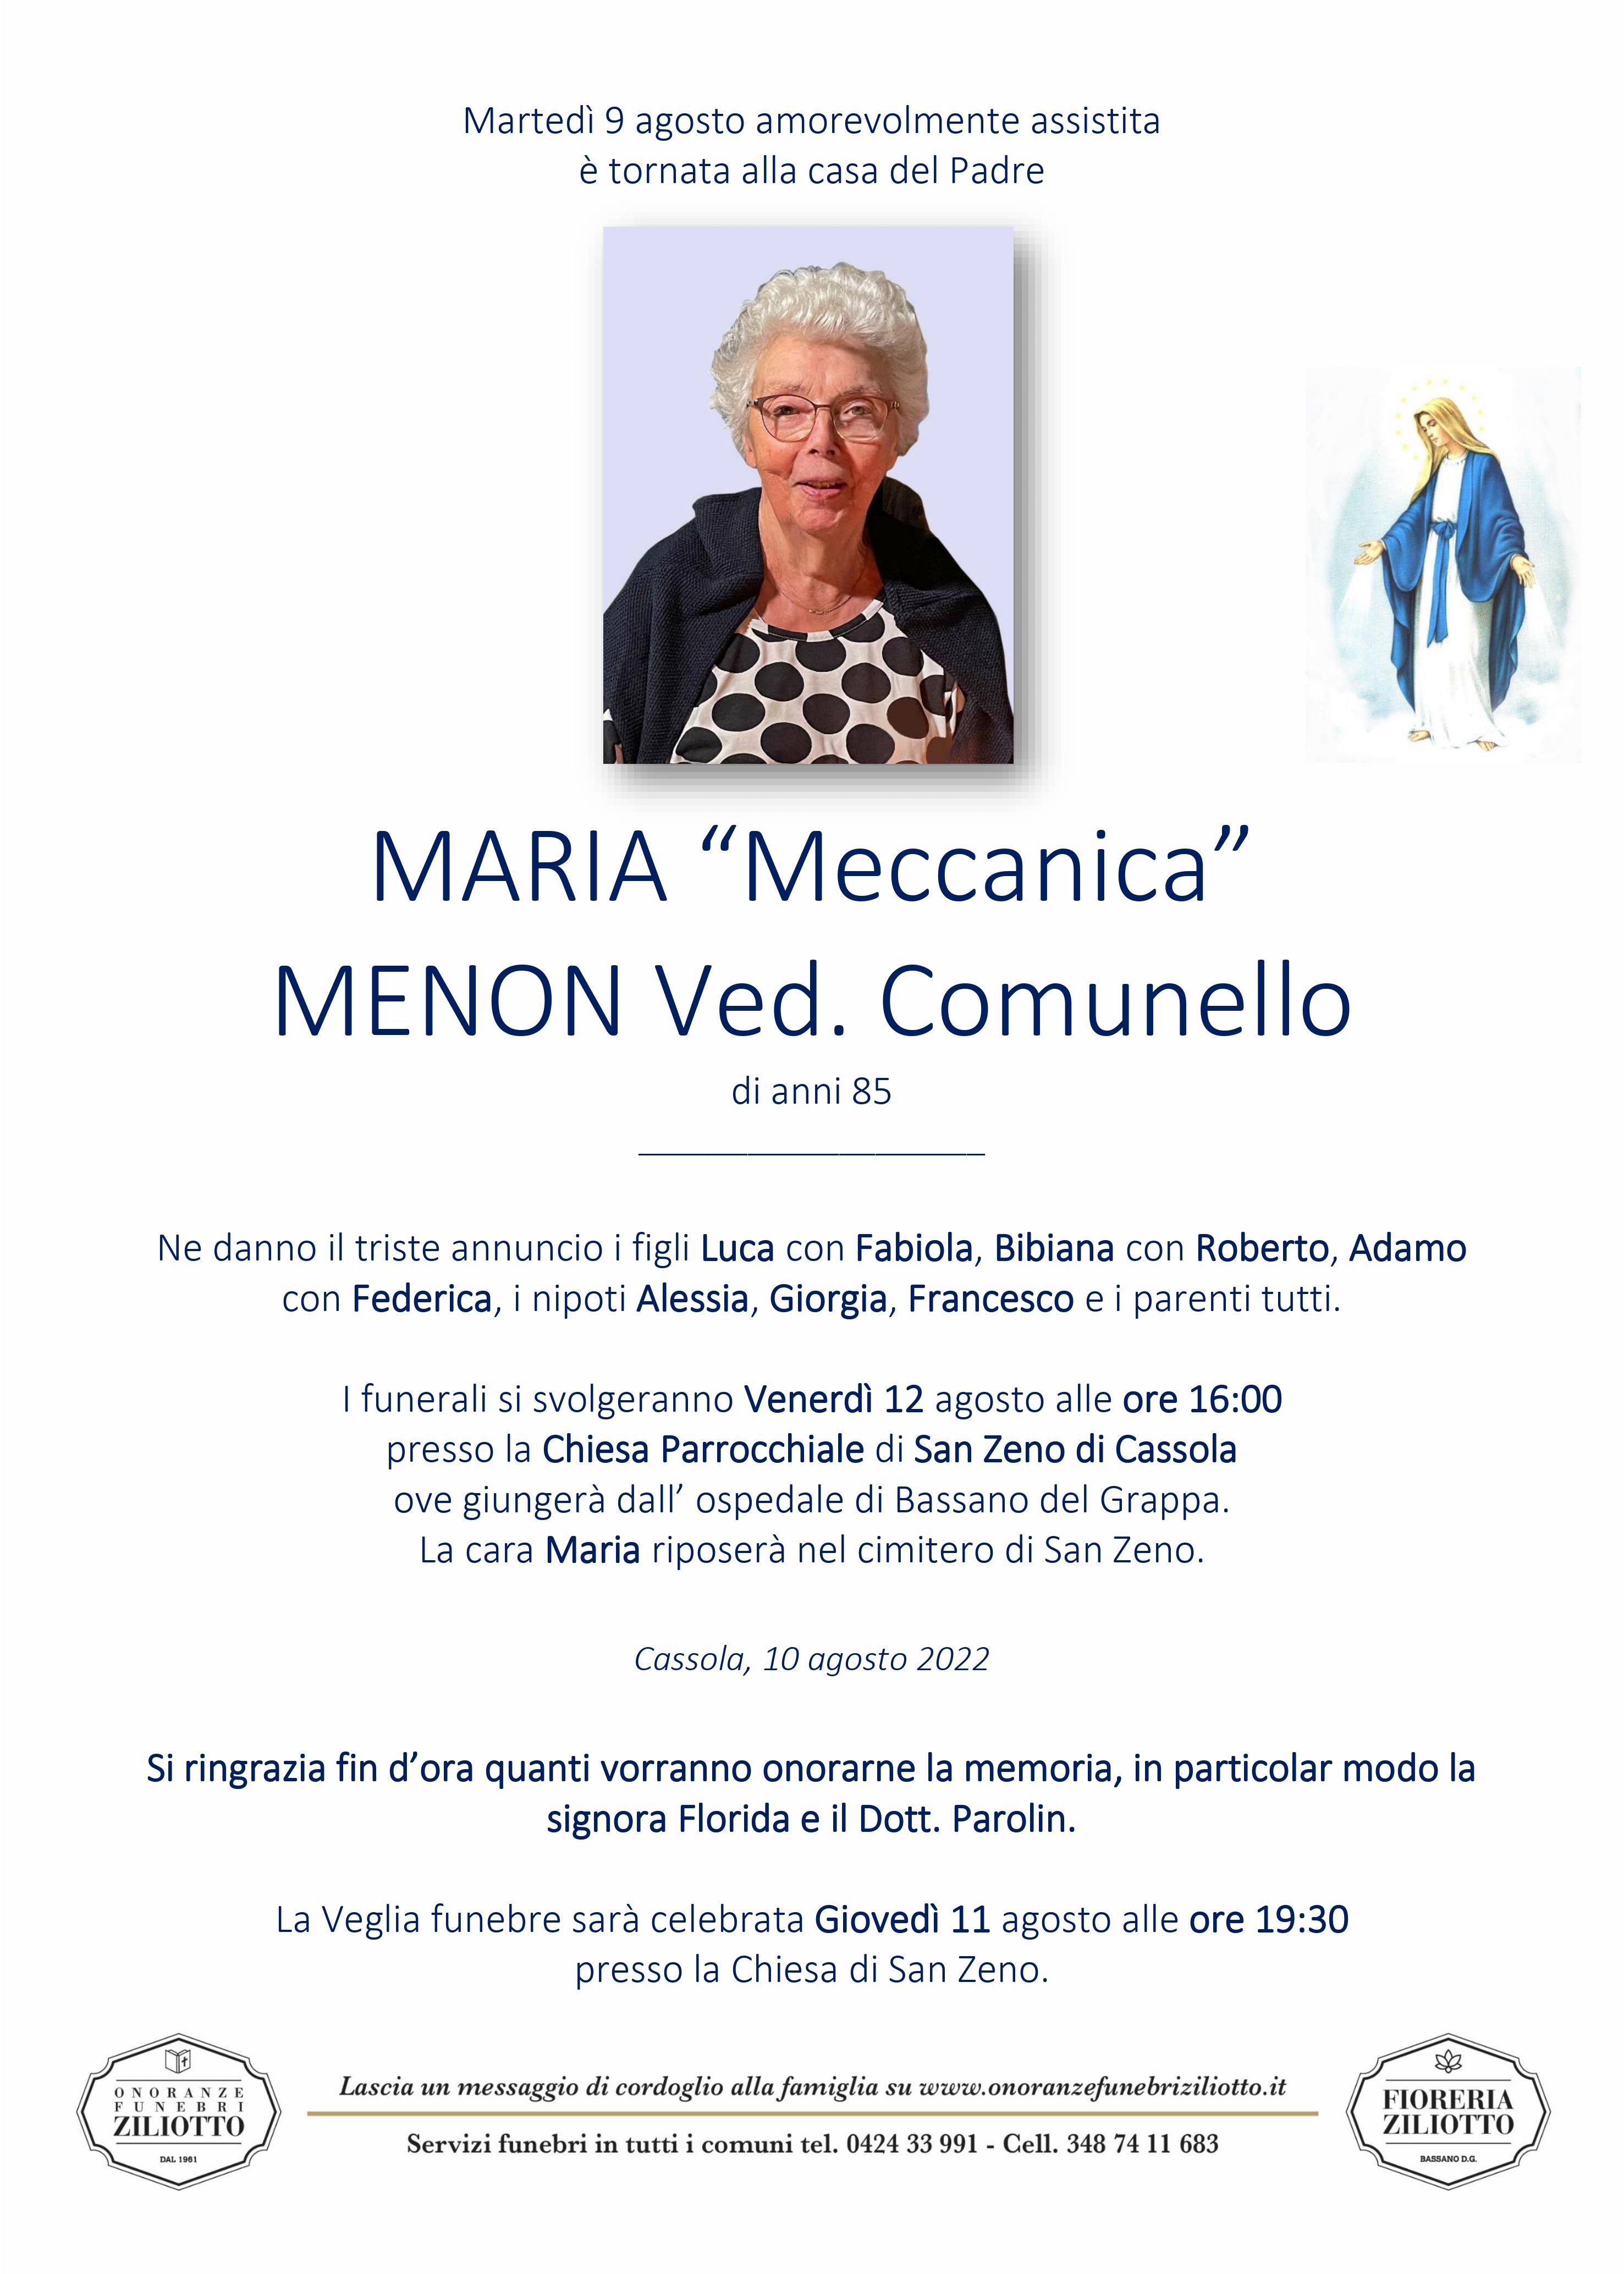 Maria Menon - 85 anni - Cassola